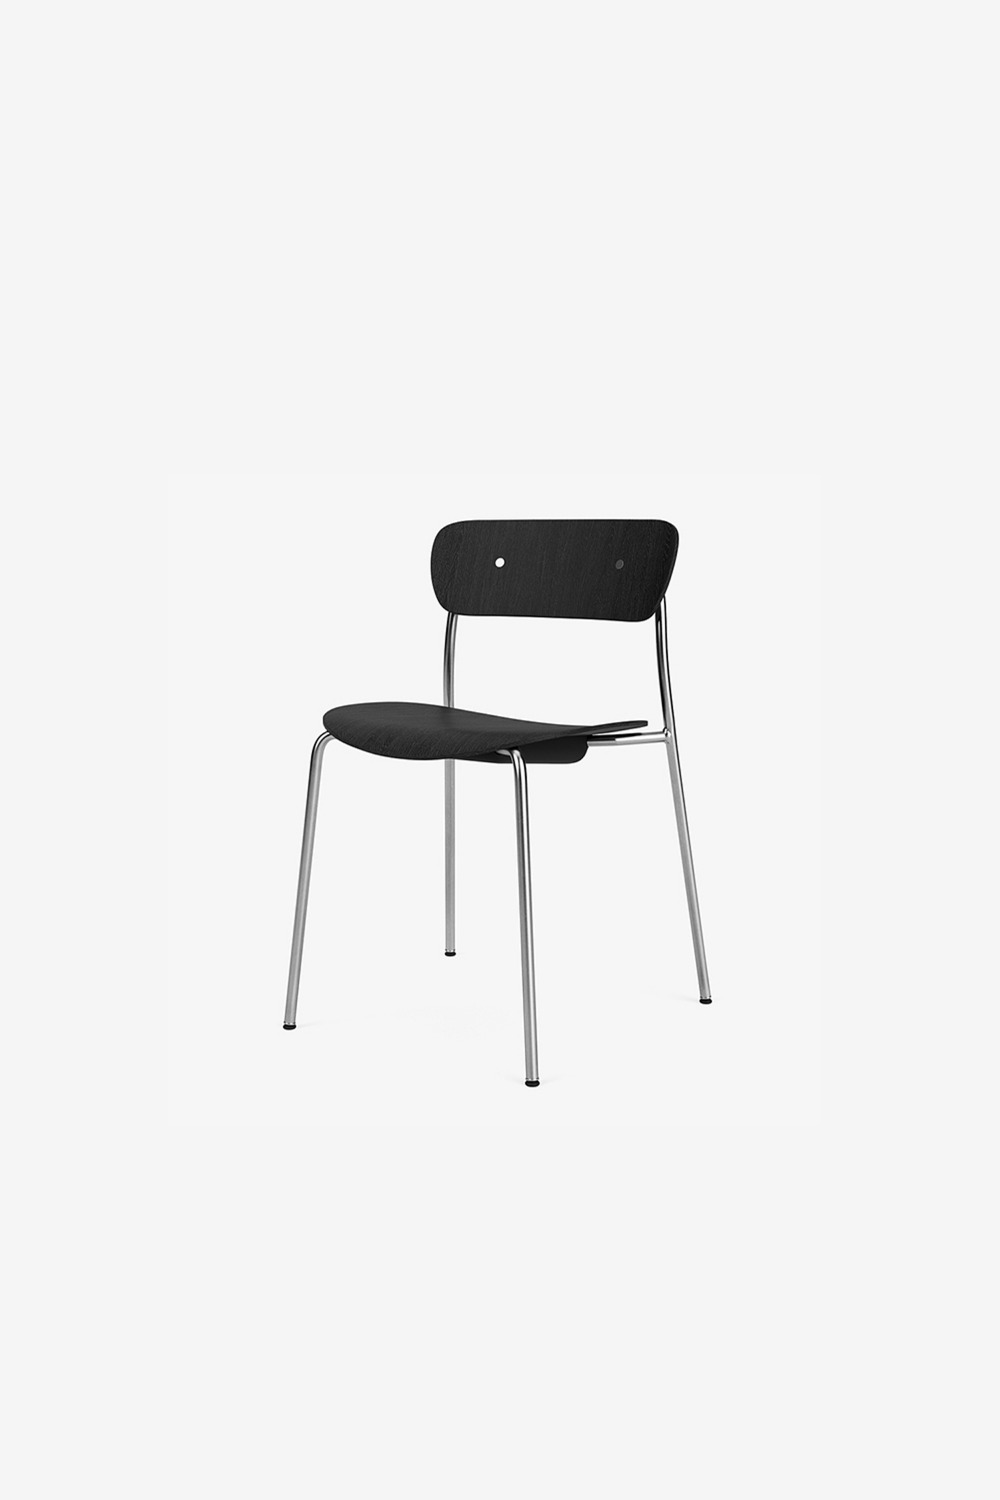 [&amp;Tradition] Pavilion chair / AV1 (Black/Chrome)